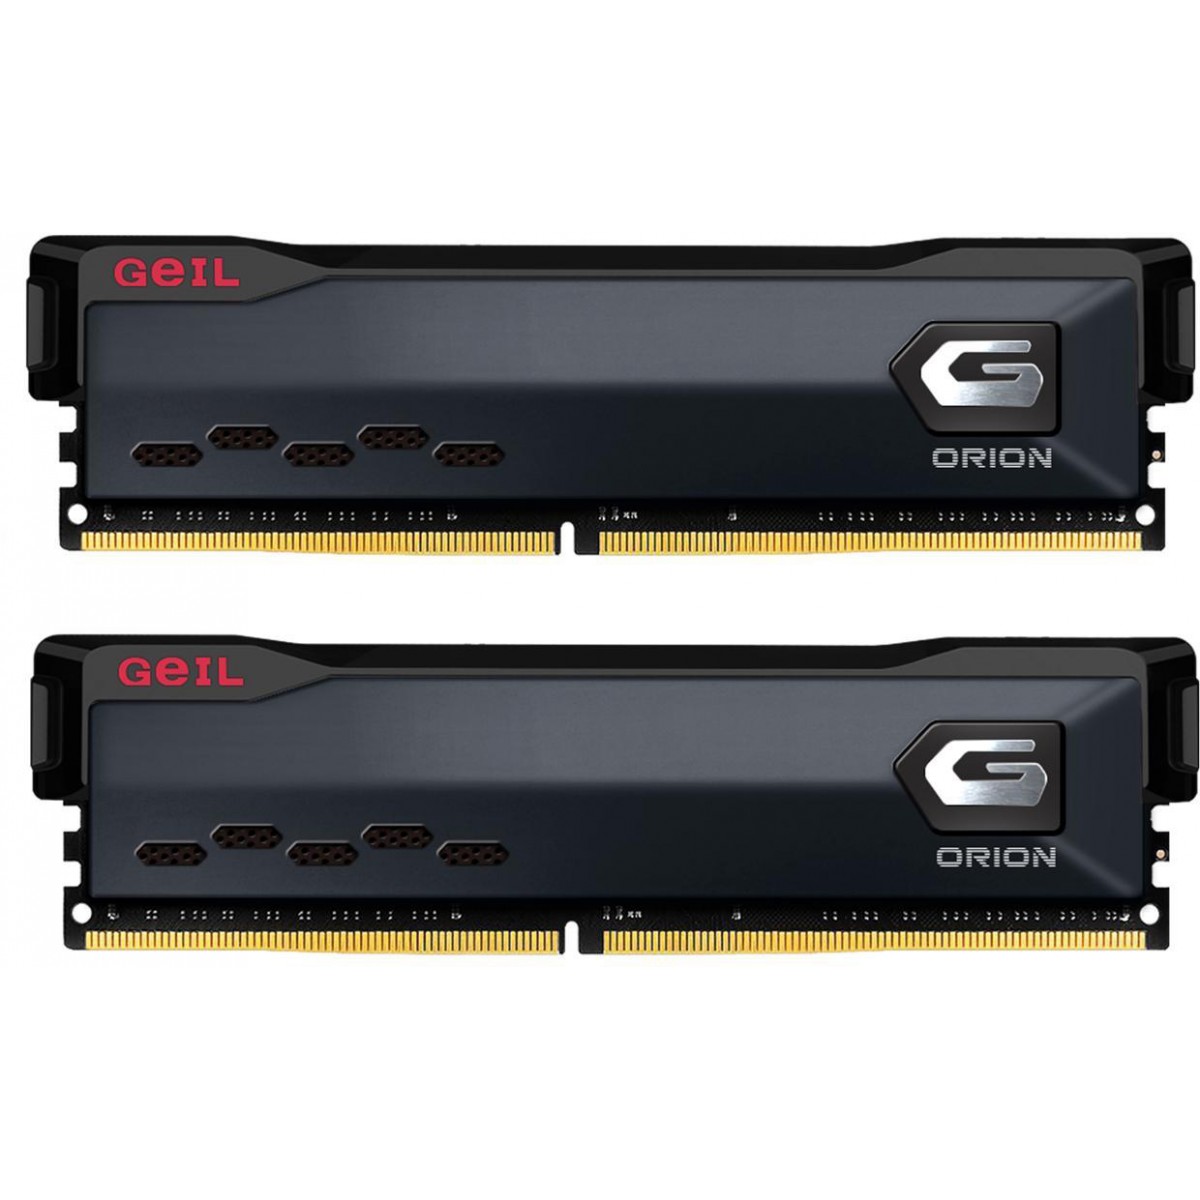 Memória DDR4 Geil Orion, 16GB (2x8GB) 3200MHz, Gray, GAOG416GB3200C16ADC